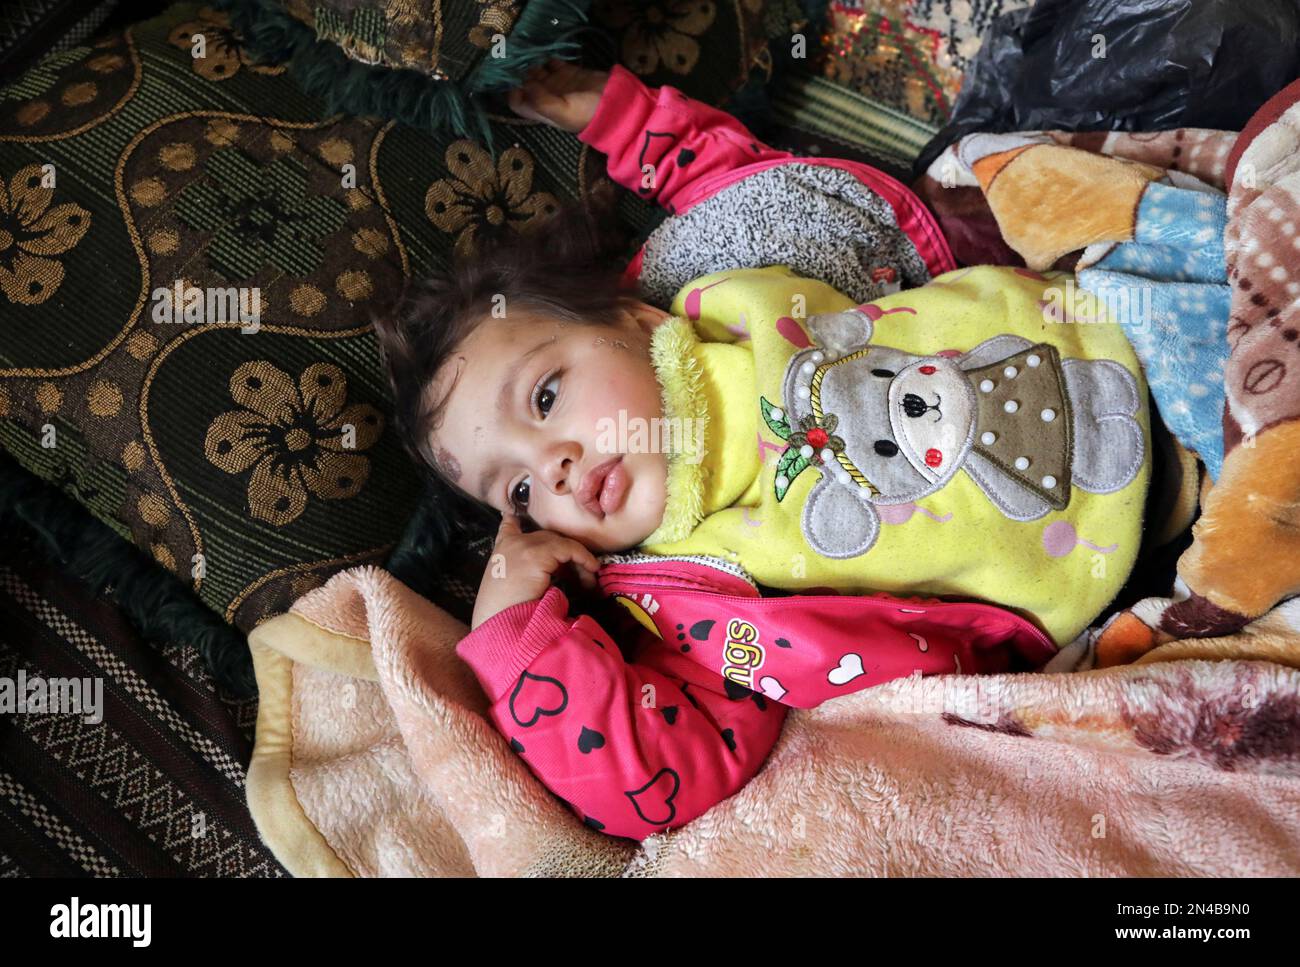 La fille d'Abdulrahman Ali al-Mahmoud qui a été sauvée des décombres à la  suite du tremblement de terre, repose dans un abri de fortune, dans la  ville rebelle de Jandaris, Syrie 8